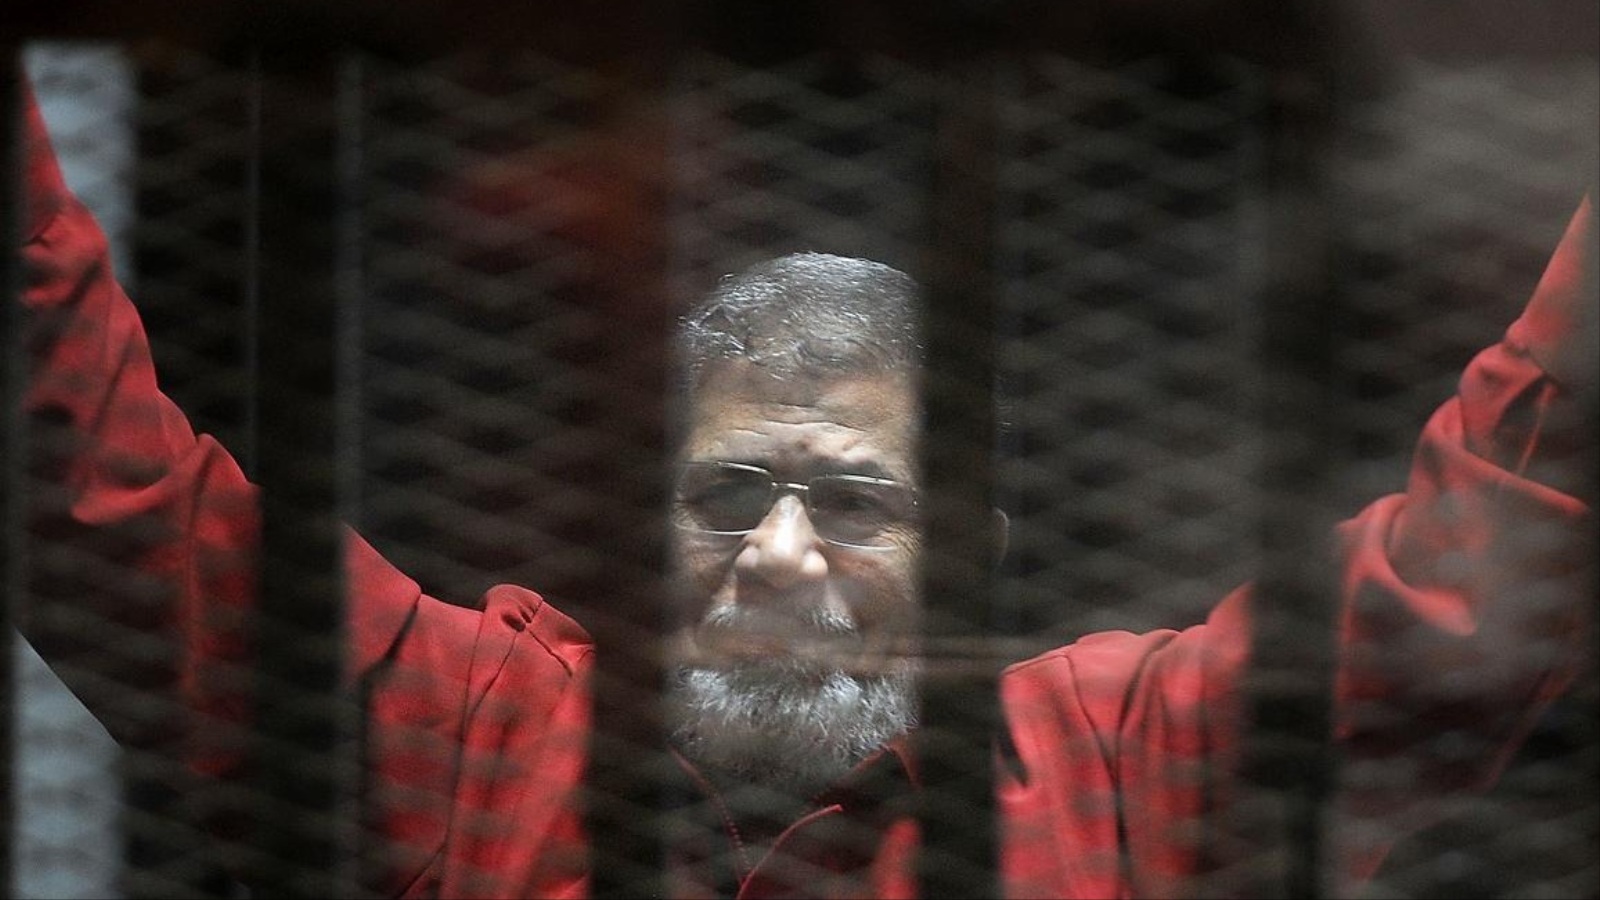 محمد مرسي أول رئيس مدني منتخب في مصر في سجنه بعد الانقلاب عليه (الأناضول)